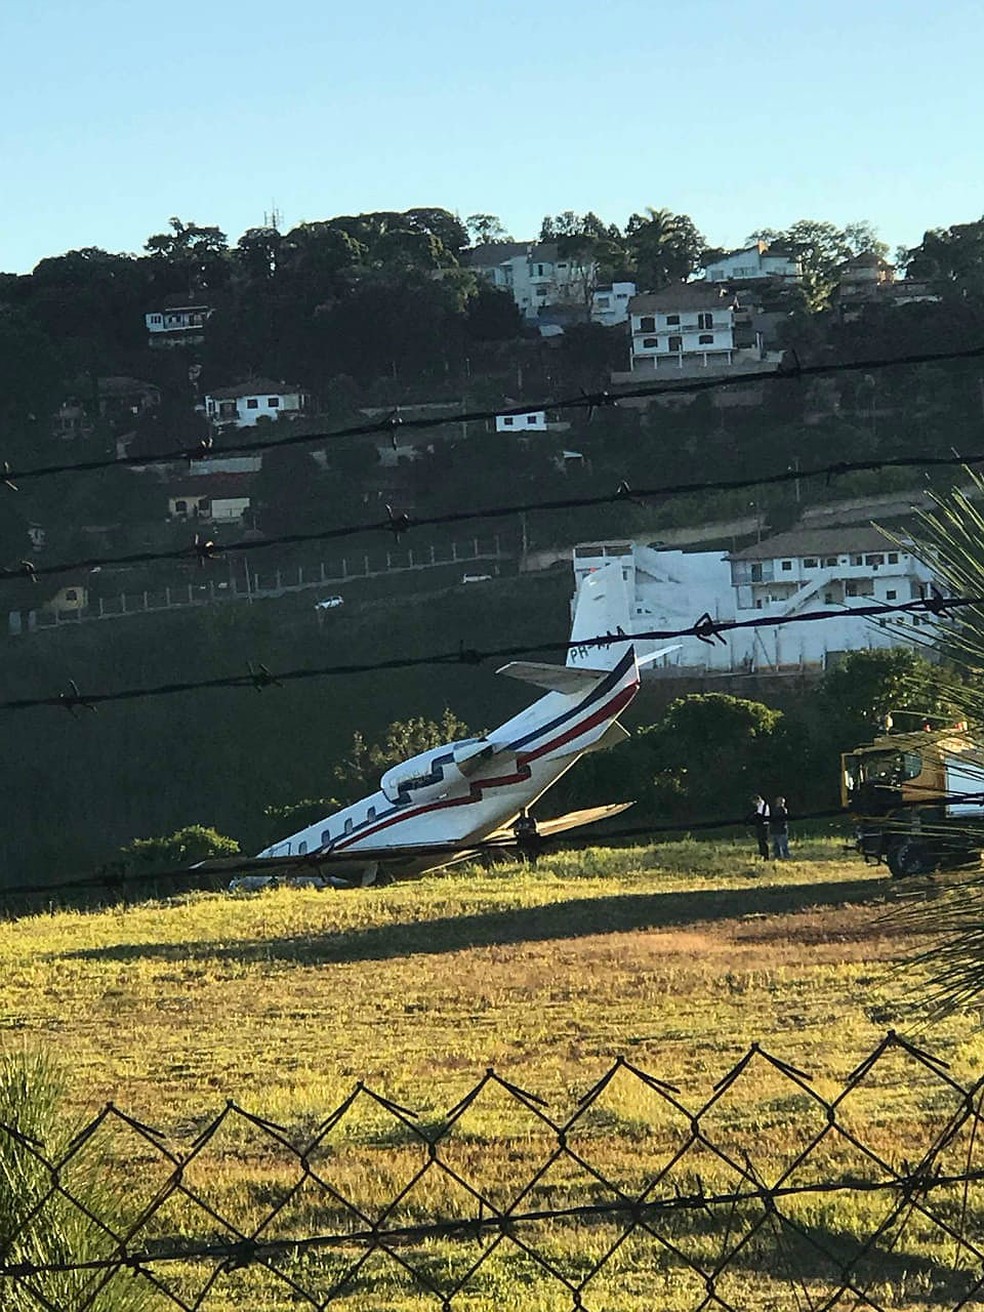 AviÃ£o do DJ Alok saiu da pista no procedimento de decolagem neste domingo (20) no Aeroporto da Serrinha em Juiz de Fora (Foto: Sarah Carvalho/Arquivo Pessoal)